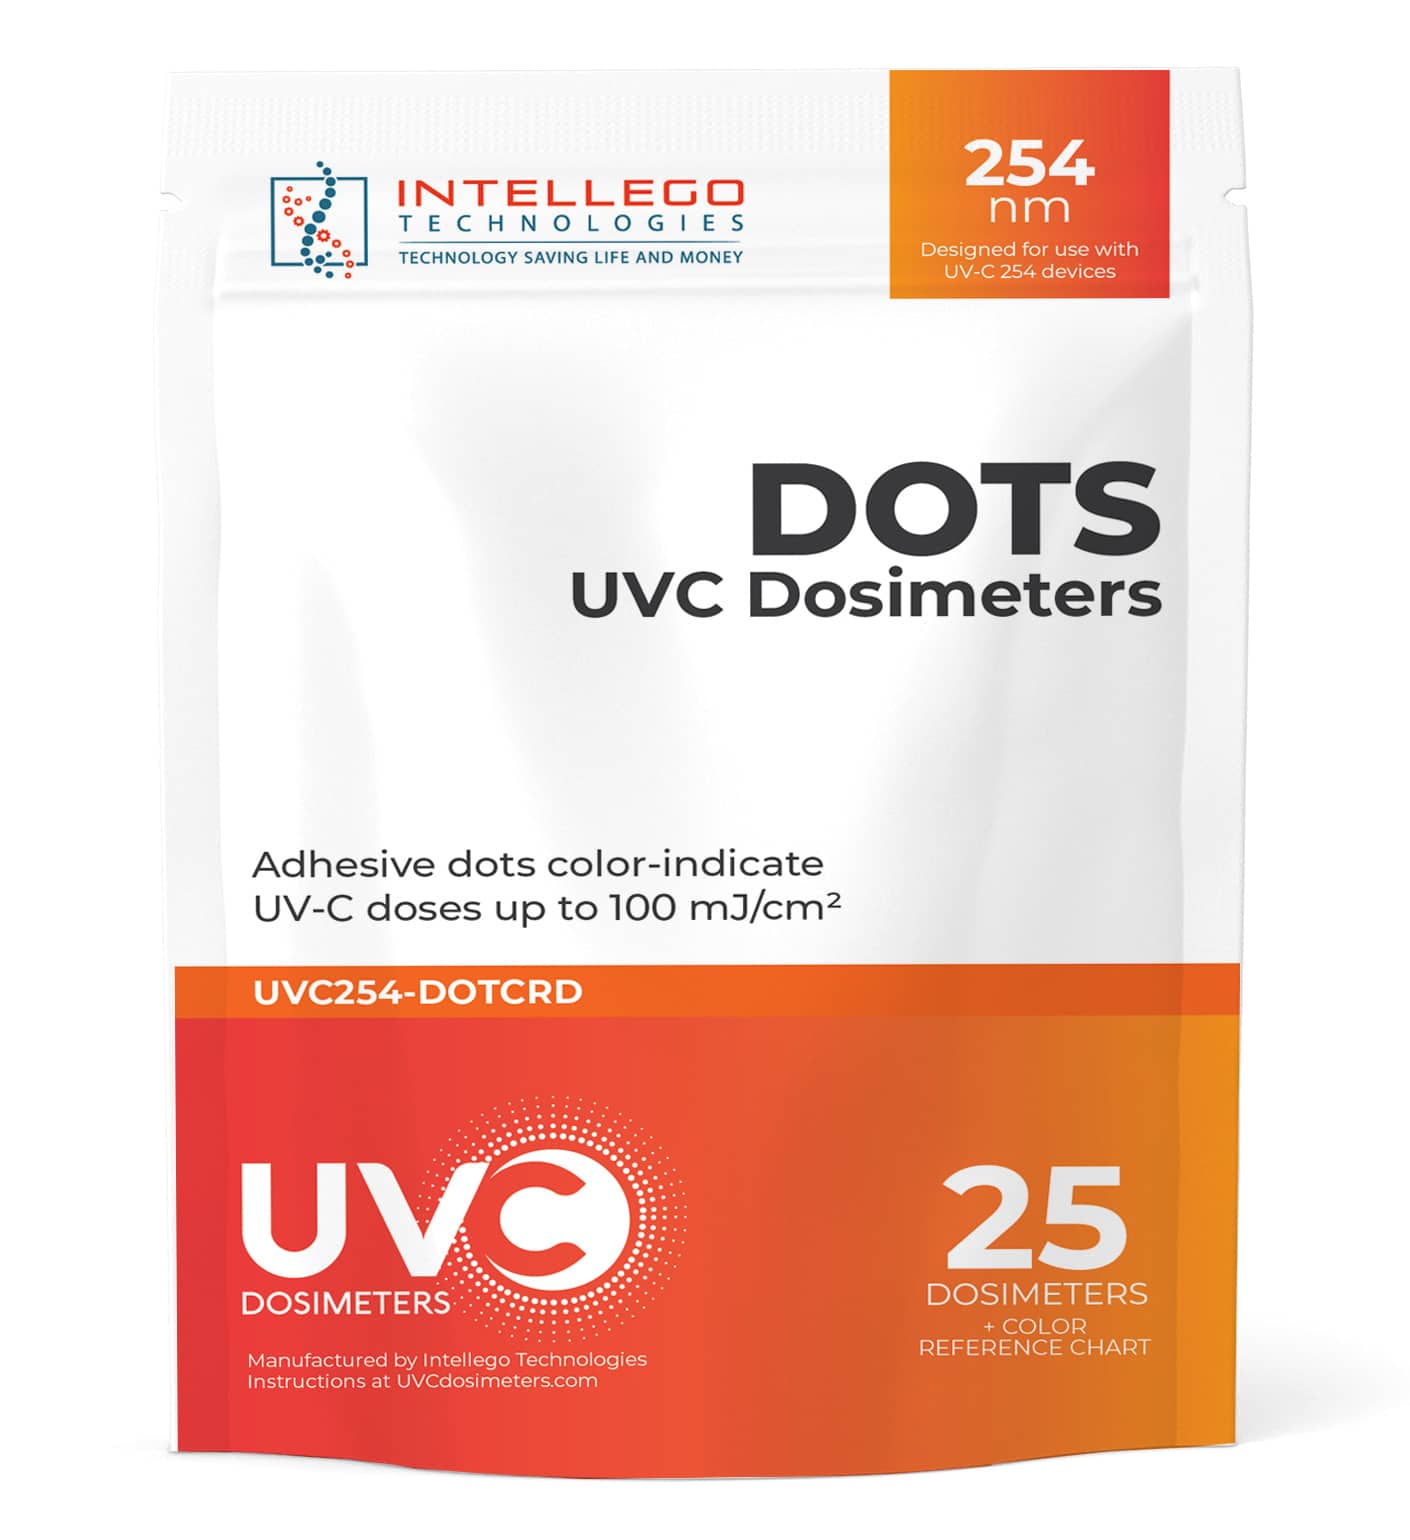 UVC Dosimeters - 254nm TRIcard packaging